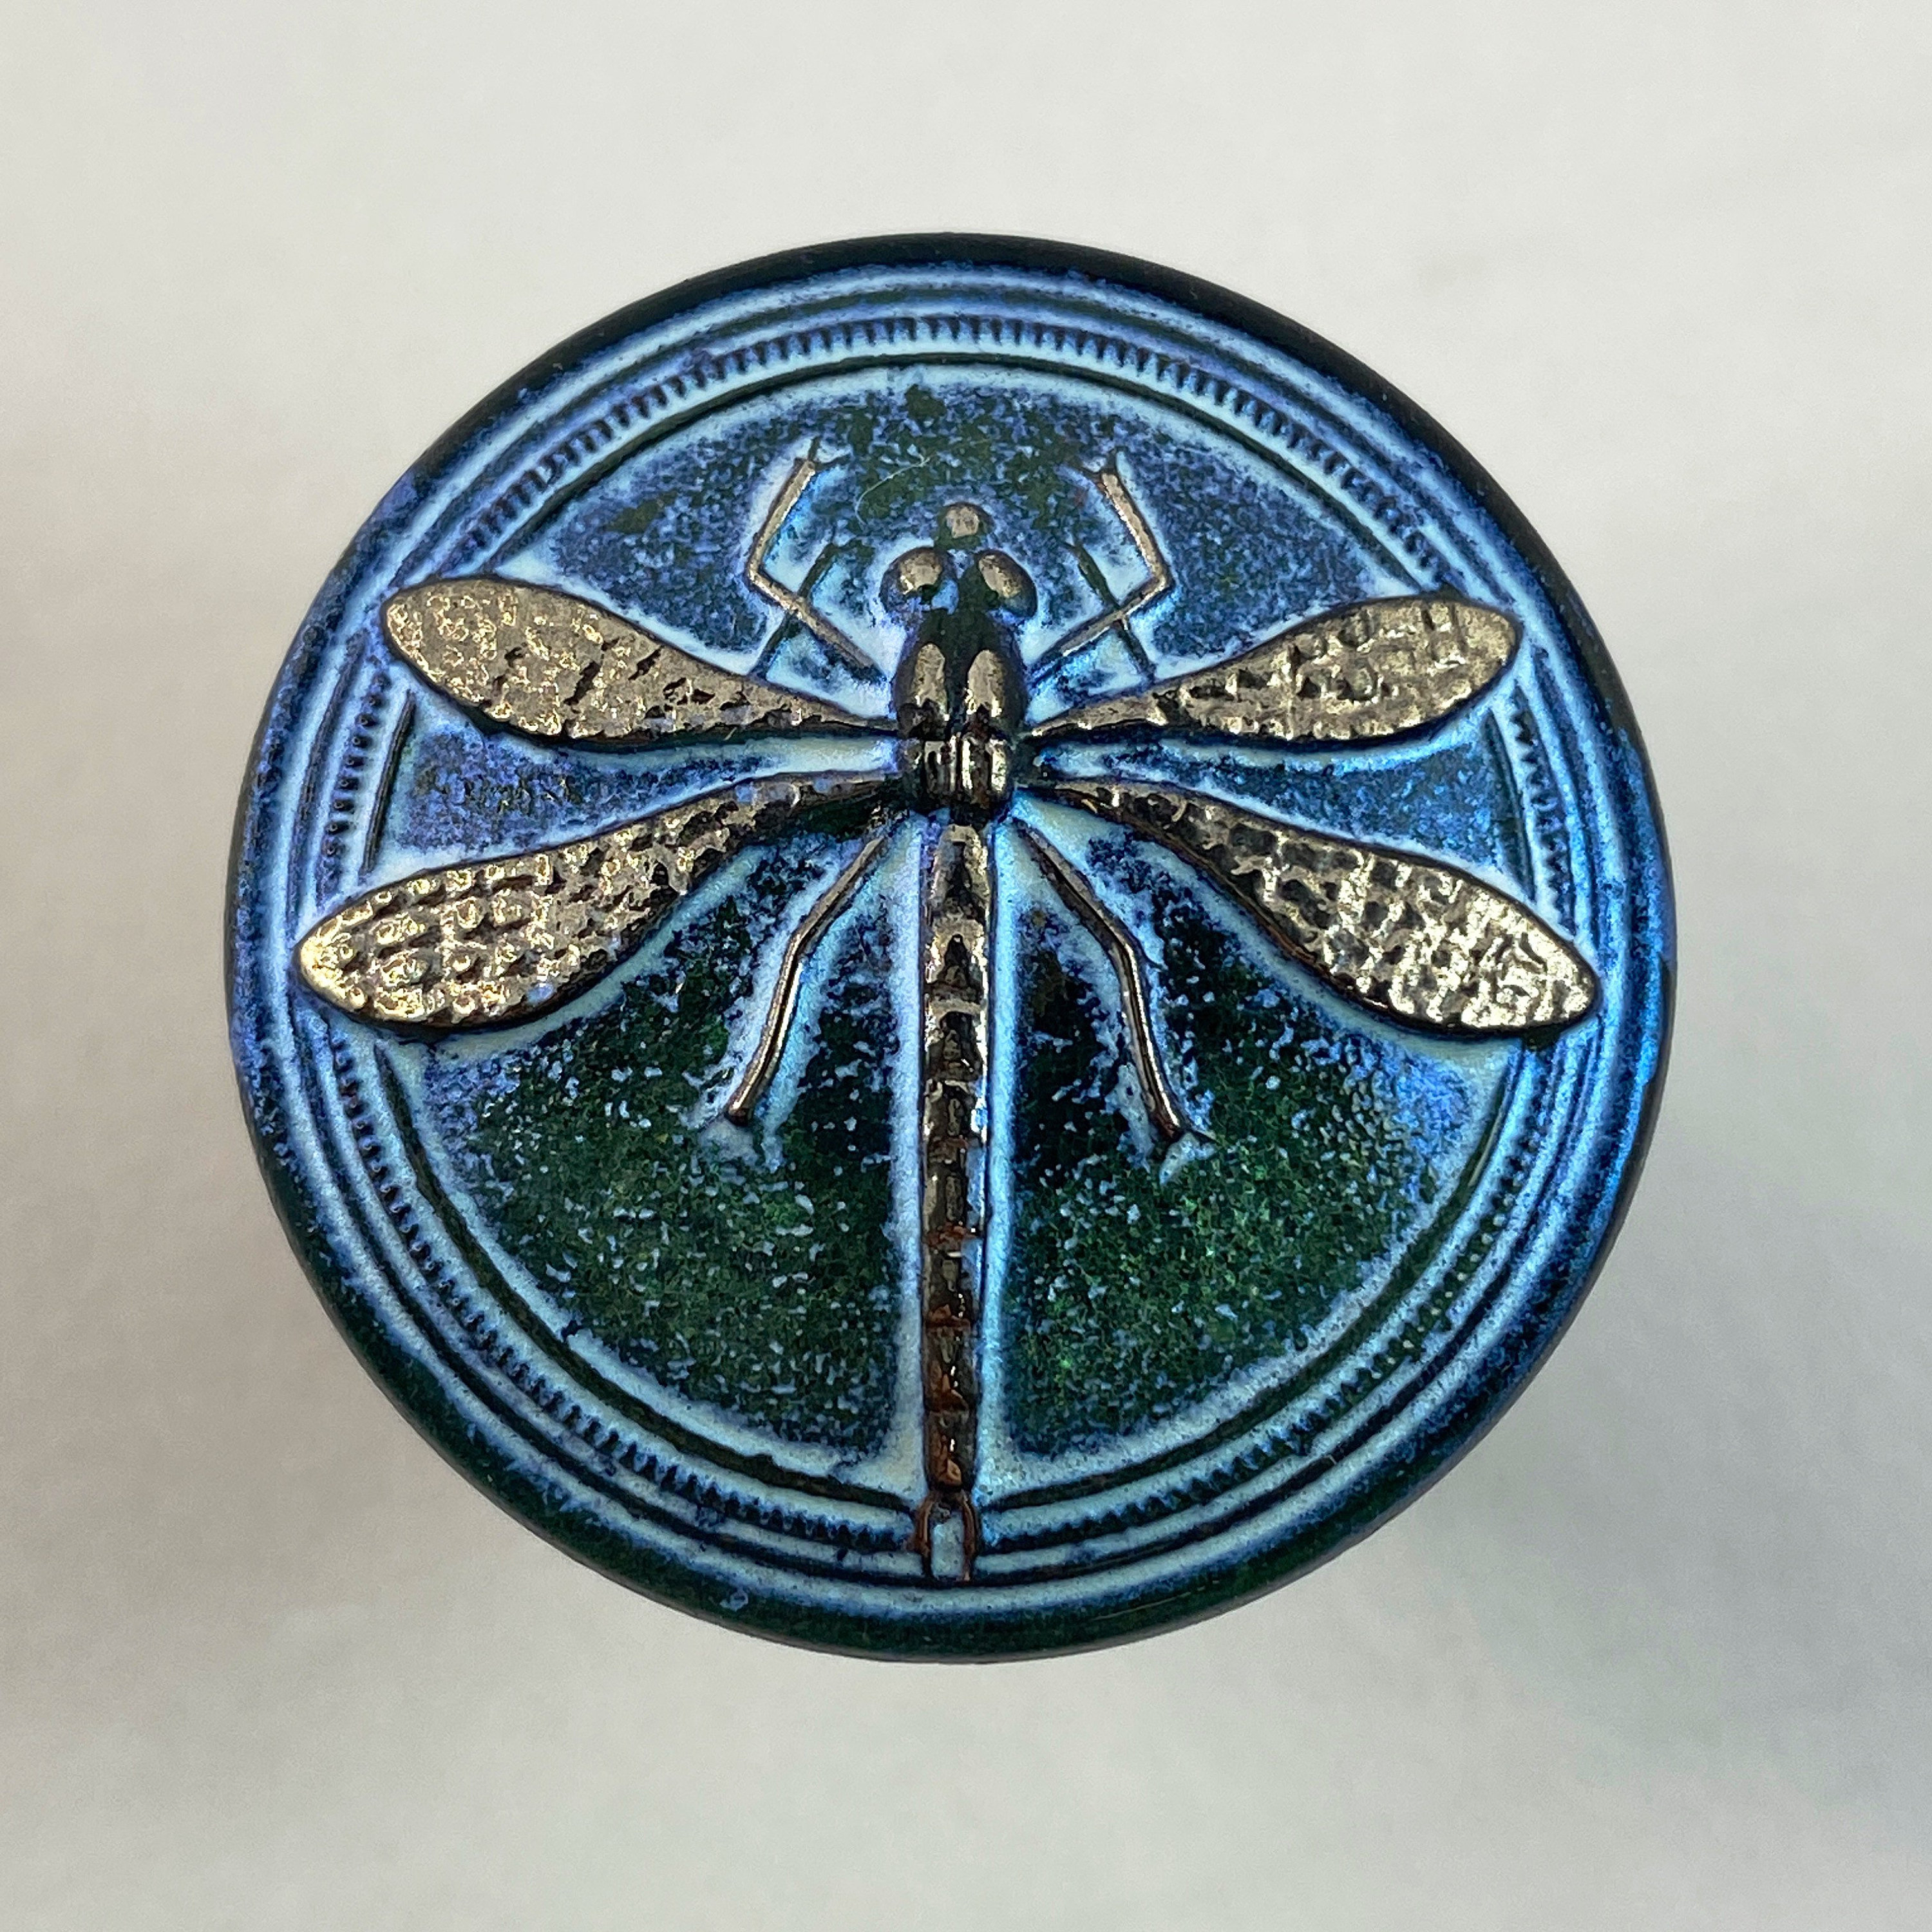 18mm Czech Glass Button Czech Glass Dragonfly Button Green Mint Czech Glass